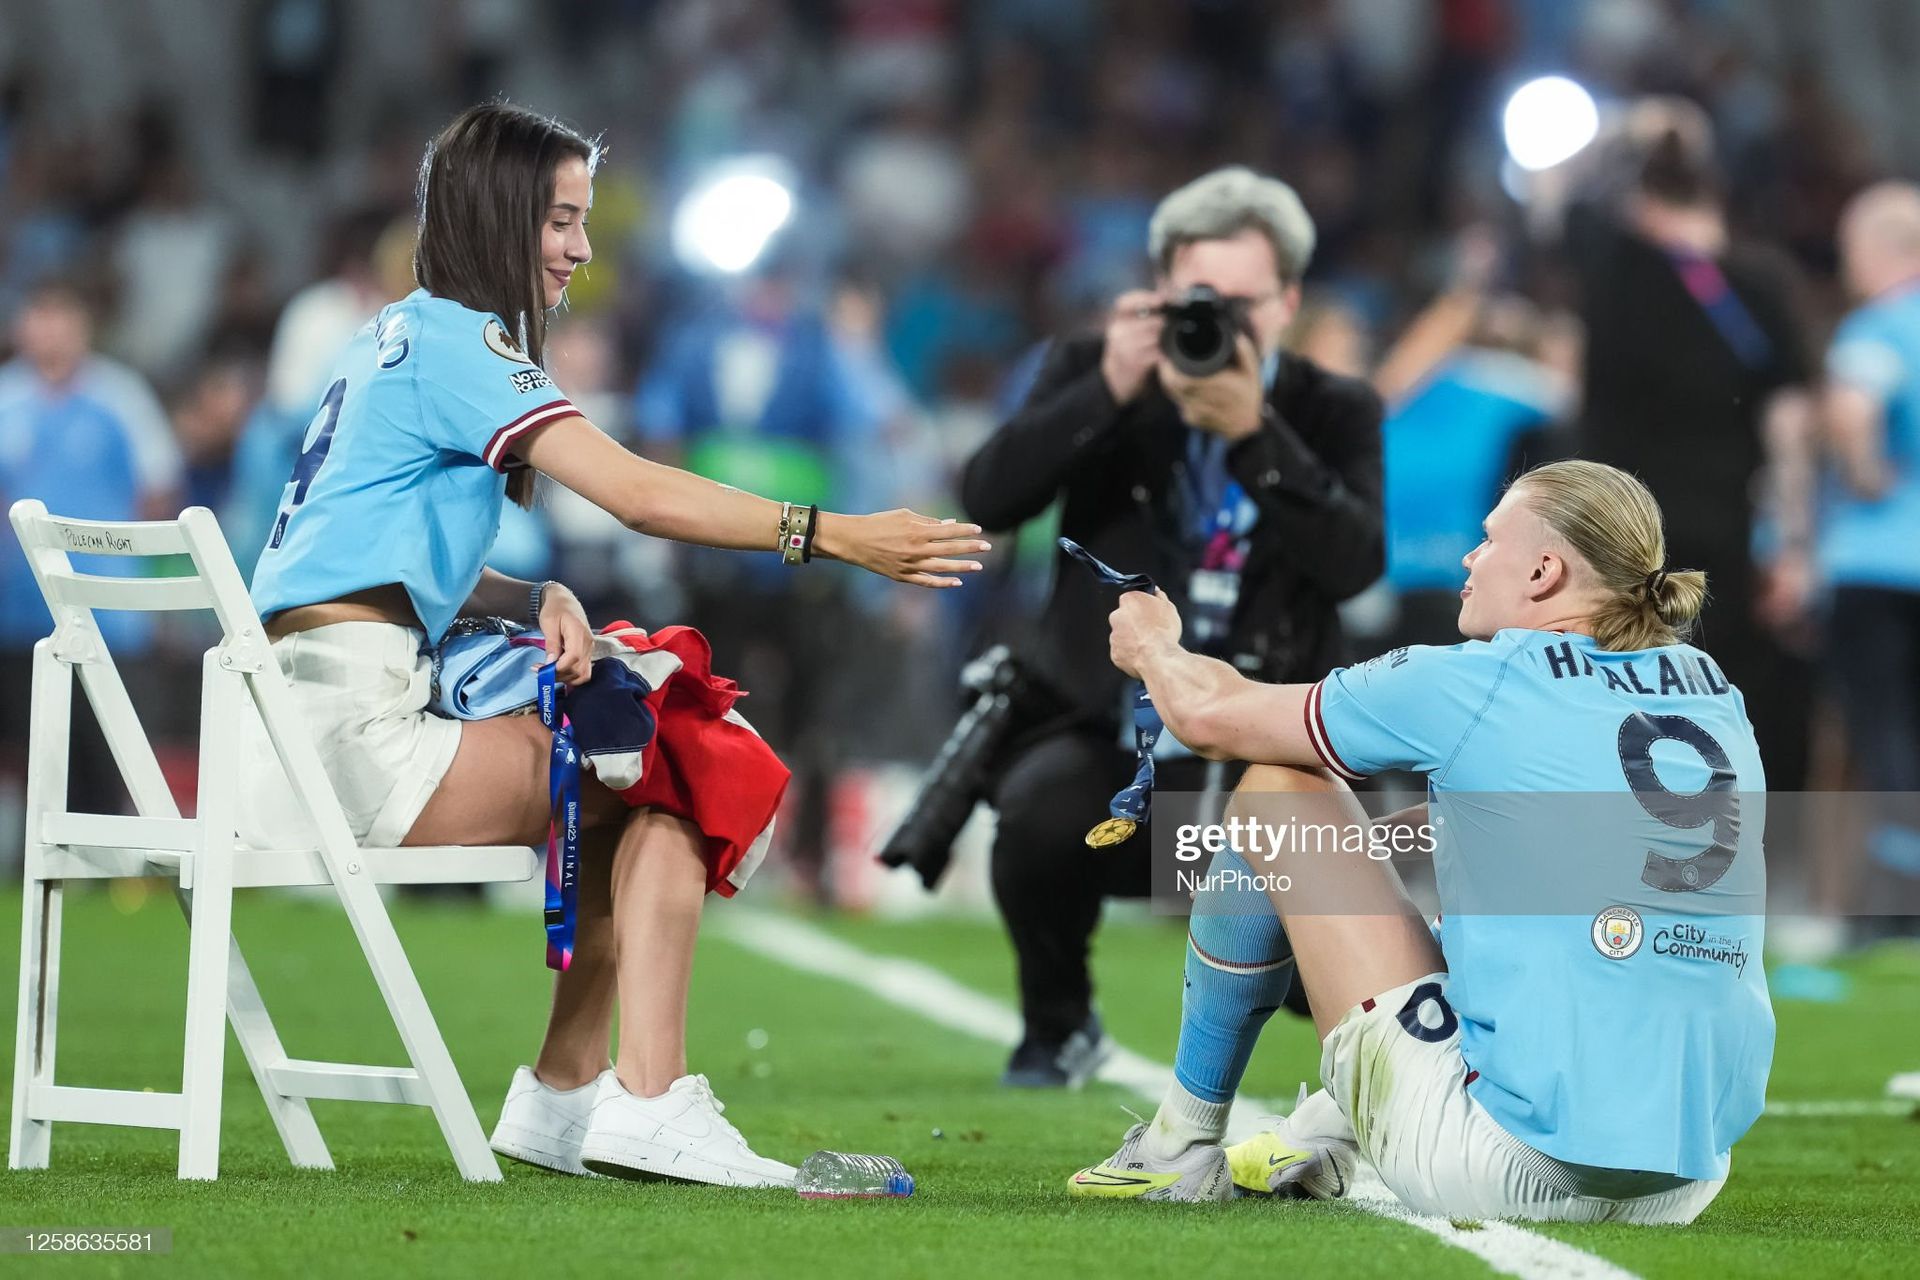 Együtt ünnepeltek a stadionban
/ Fotó: Getty Images